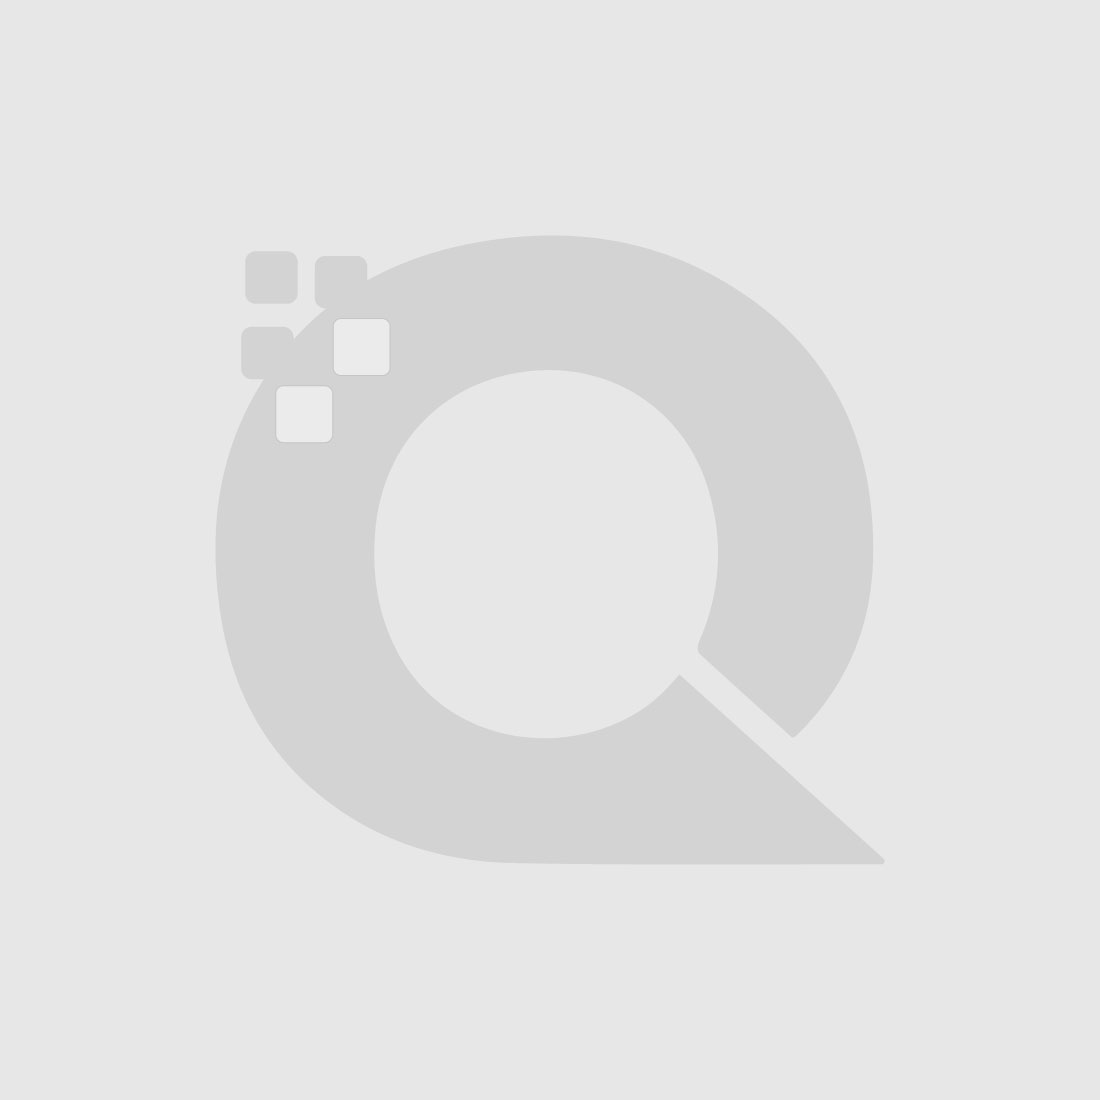 Guerniss Paris Velvet Matte Lipstick - GS017 - 3.5g